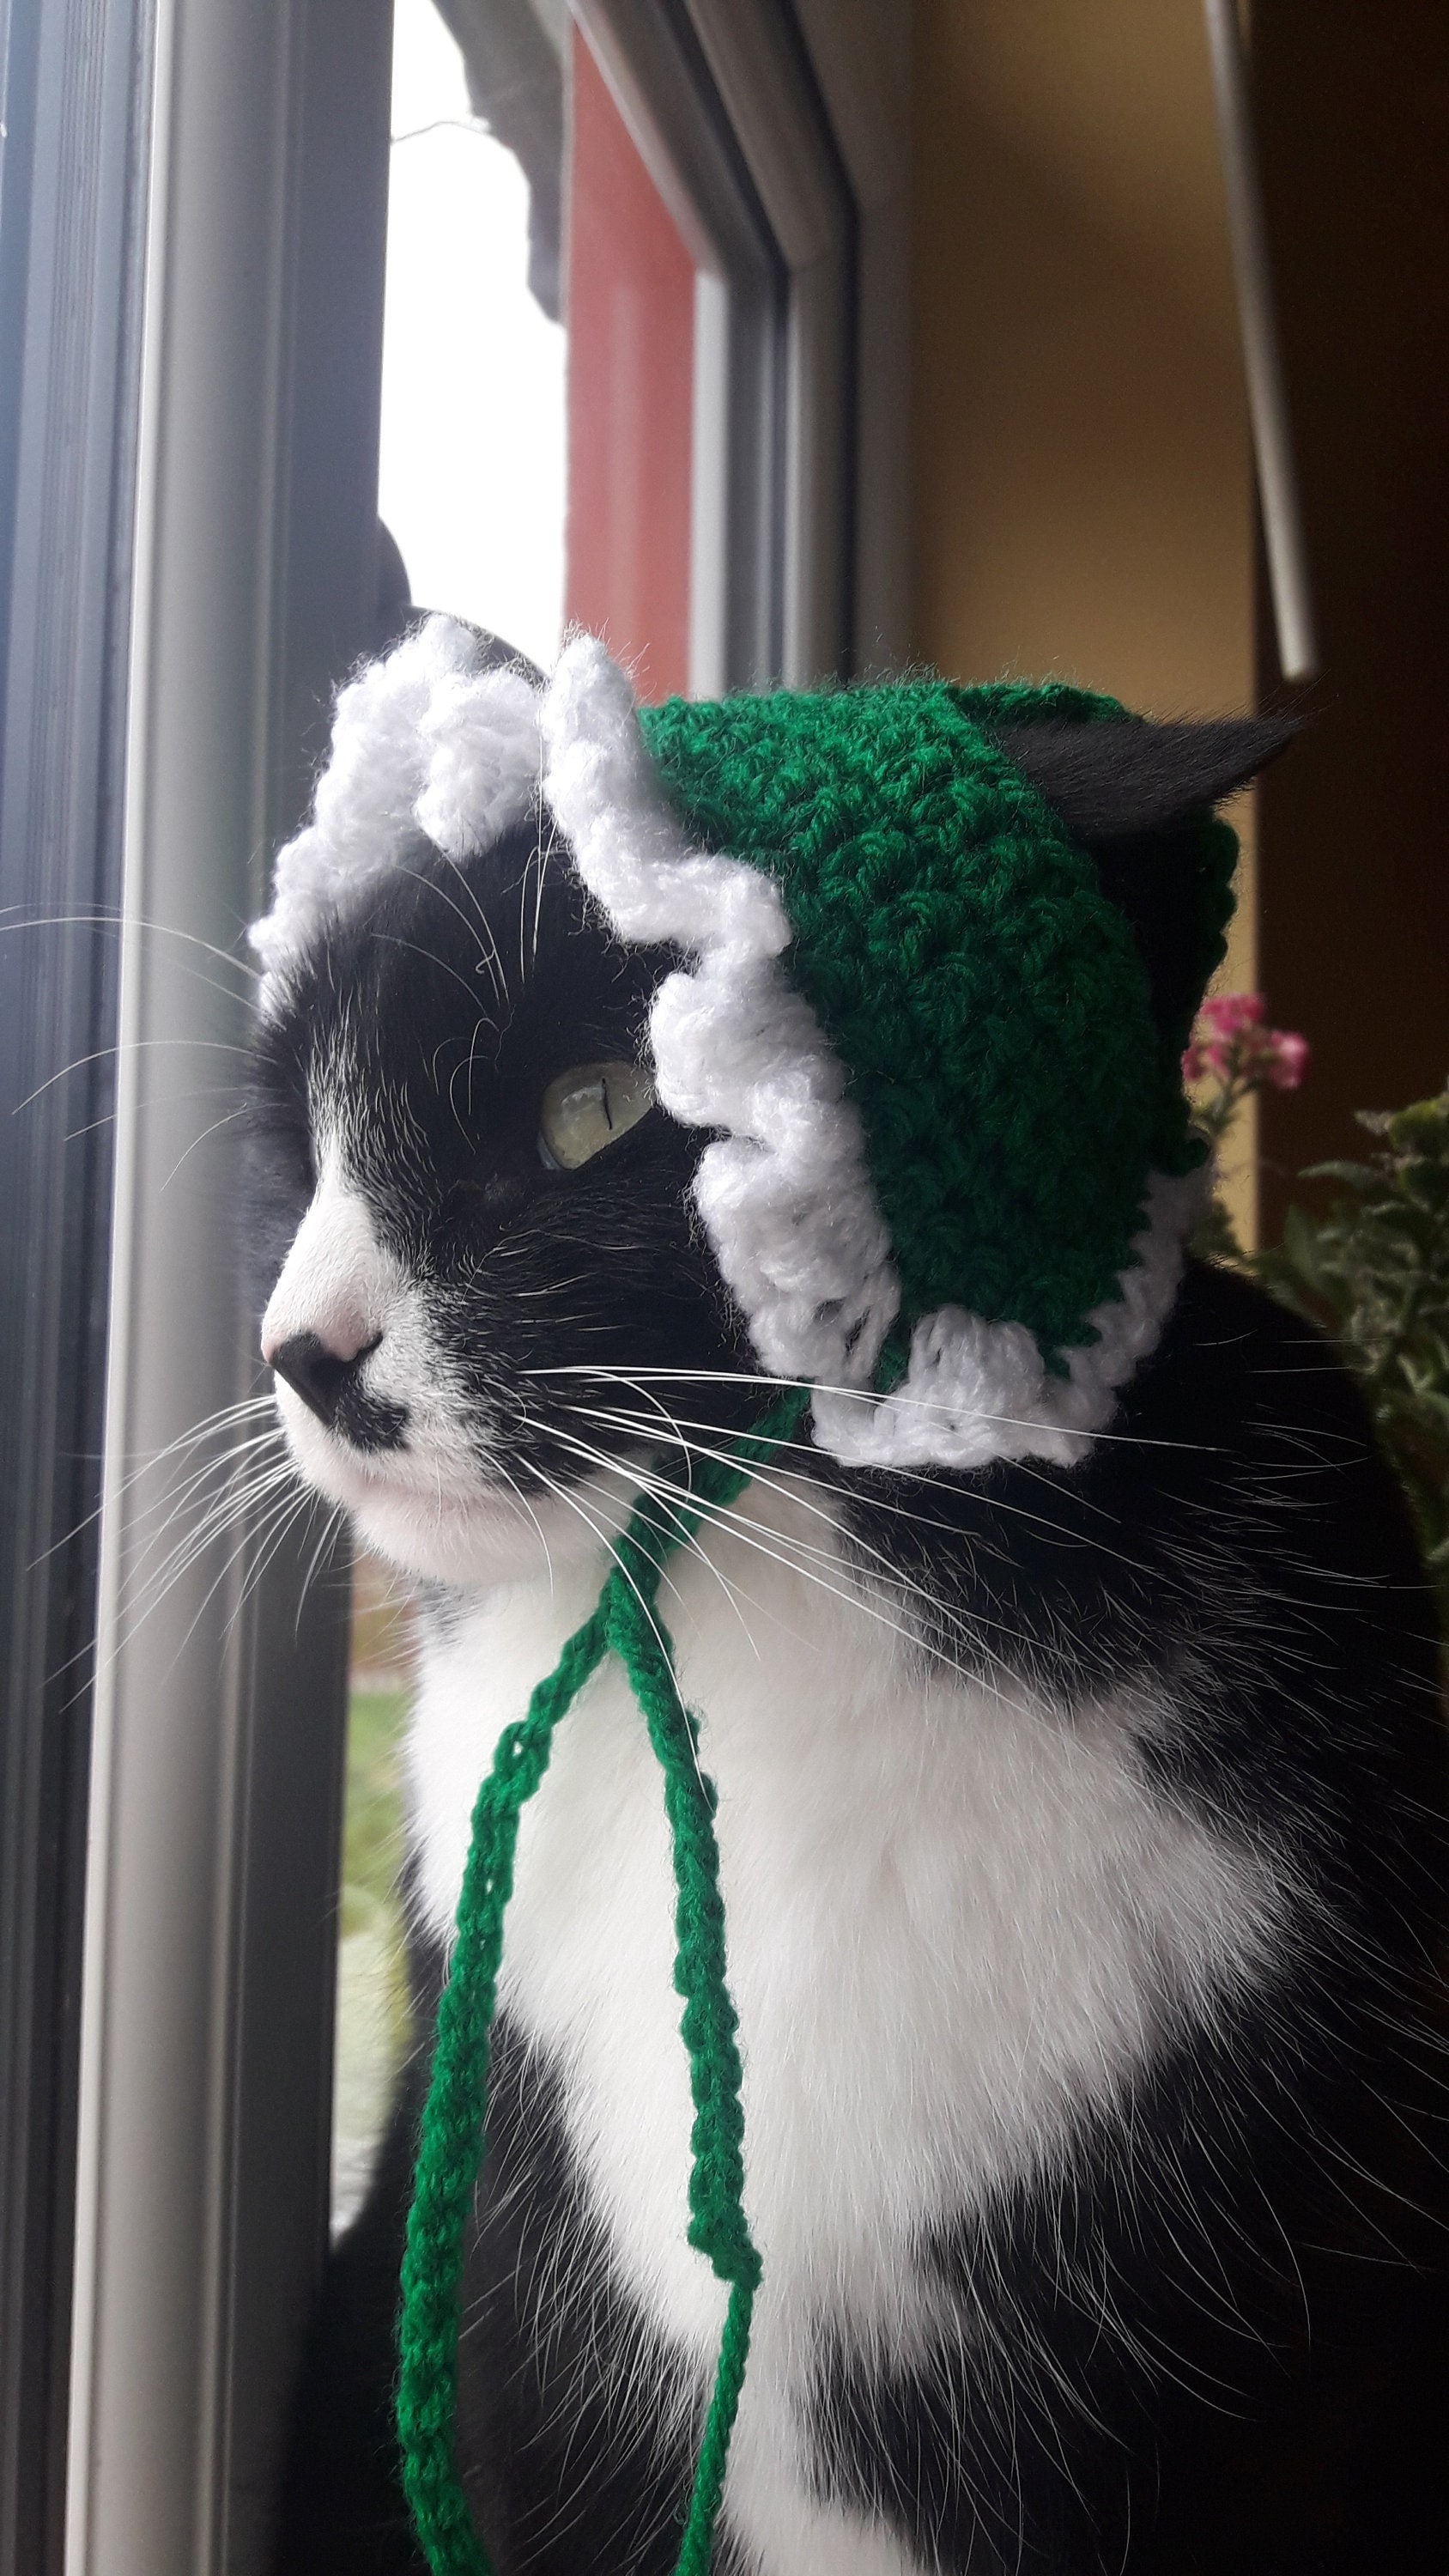 Collier de Noël pour chat en crochet - Idée cadeau pour chat